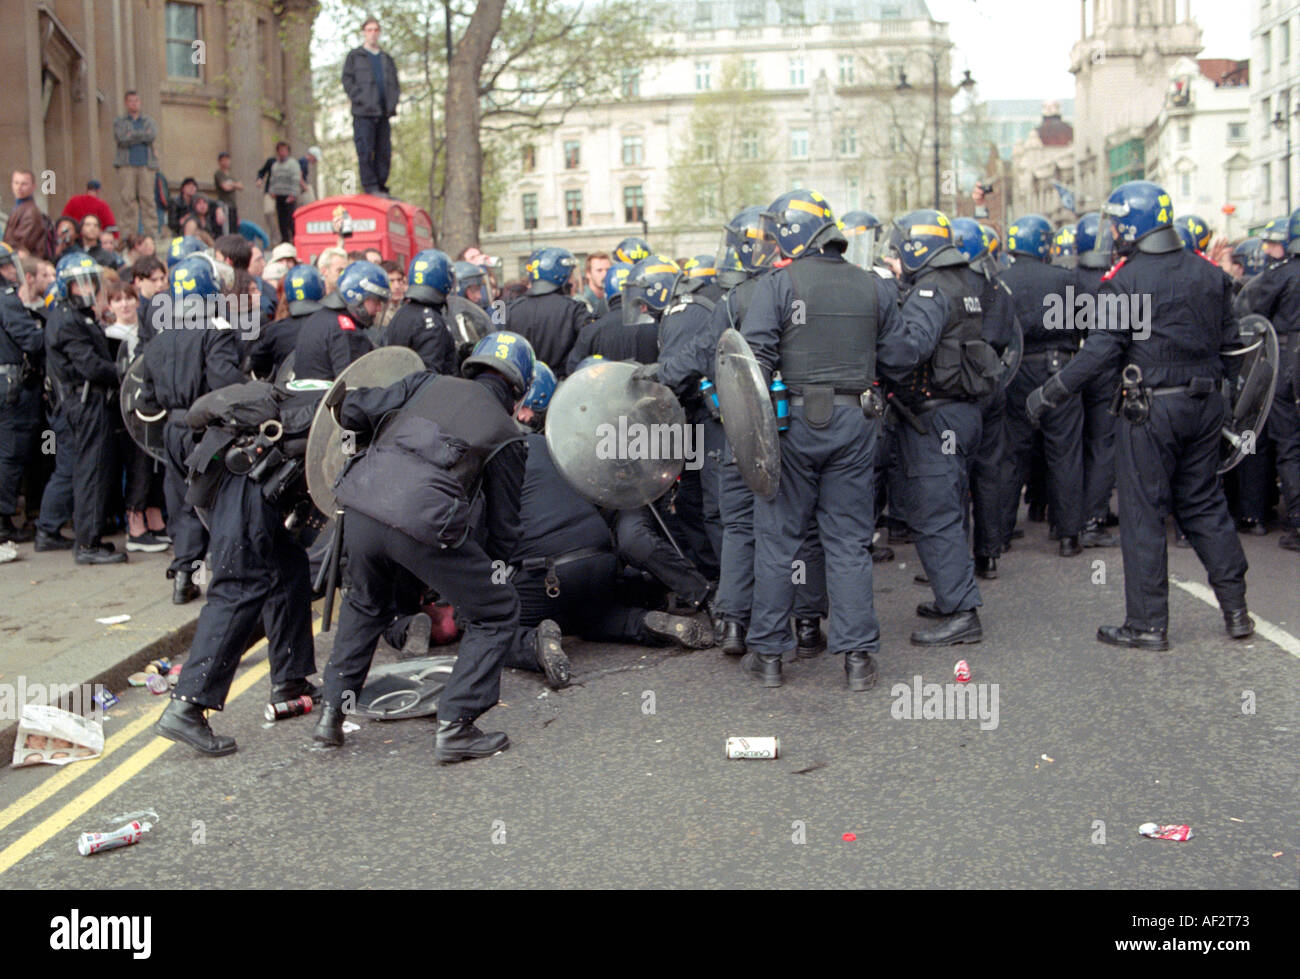 La police anti-émeute a appelé à Trafalgar Square lors de l'appel Mayday 2000 protestation qui s'est désintégré en émeutes. Banque D'Images